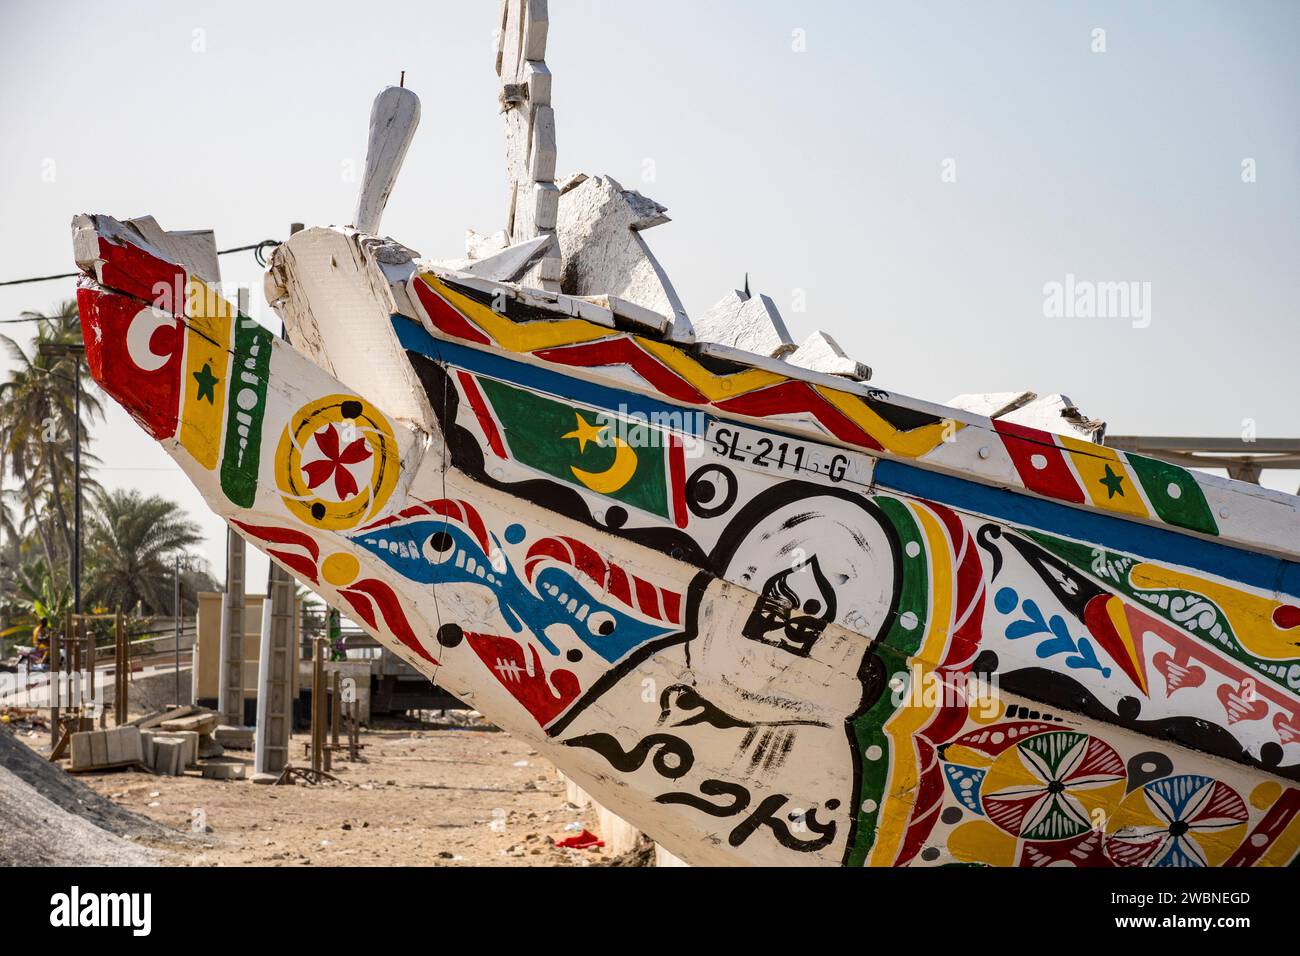 Afrique de l'Ouest, Sénégal, Saint Louis. Proue peinte d'un bateau de pêche ou pirogue sur l'estuaire du fleuve Sénégal. Banque D'Images